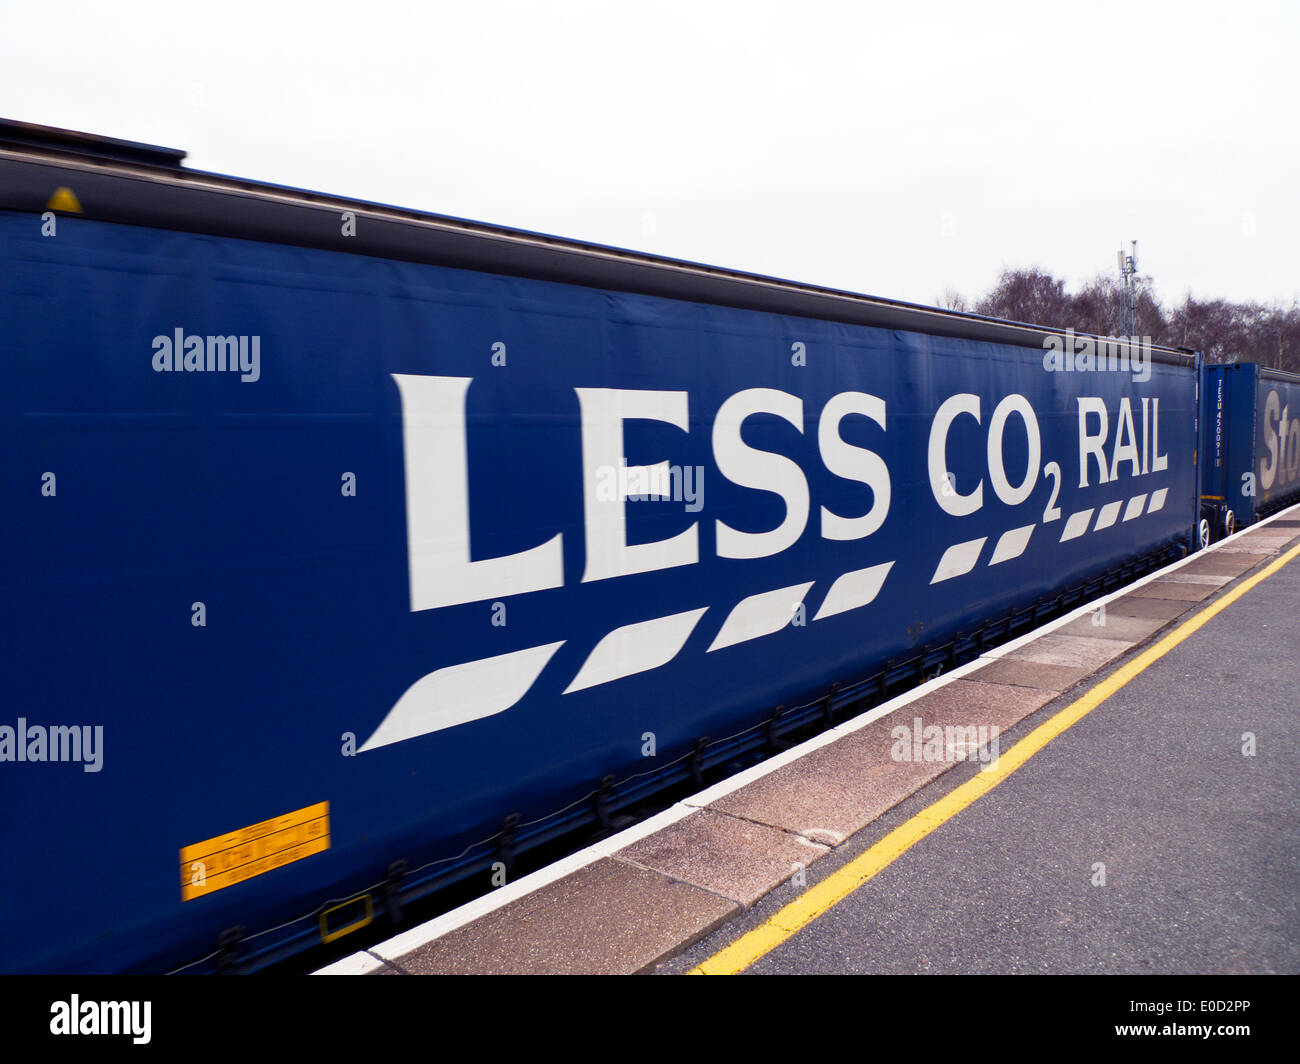 Tesco Supermarkt 'Less CO2 Rail' Umwelt-Werbung Zeichen auf Seite von Güterzug Schiene Gütercontainer in Gloucestershire England Großbritannien KATHY DEWITT Stockfoto